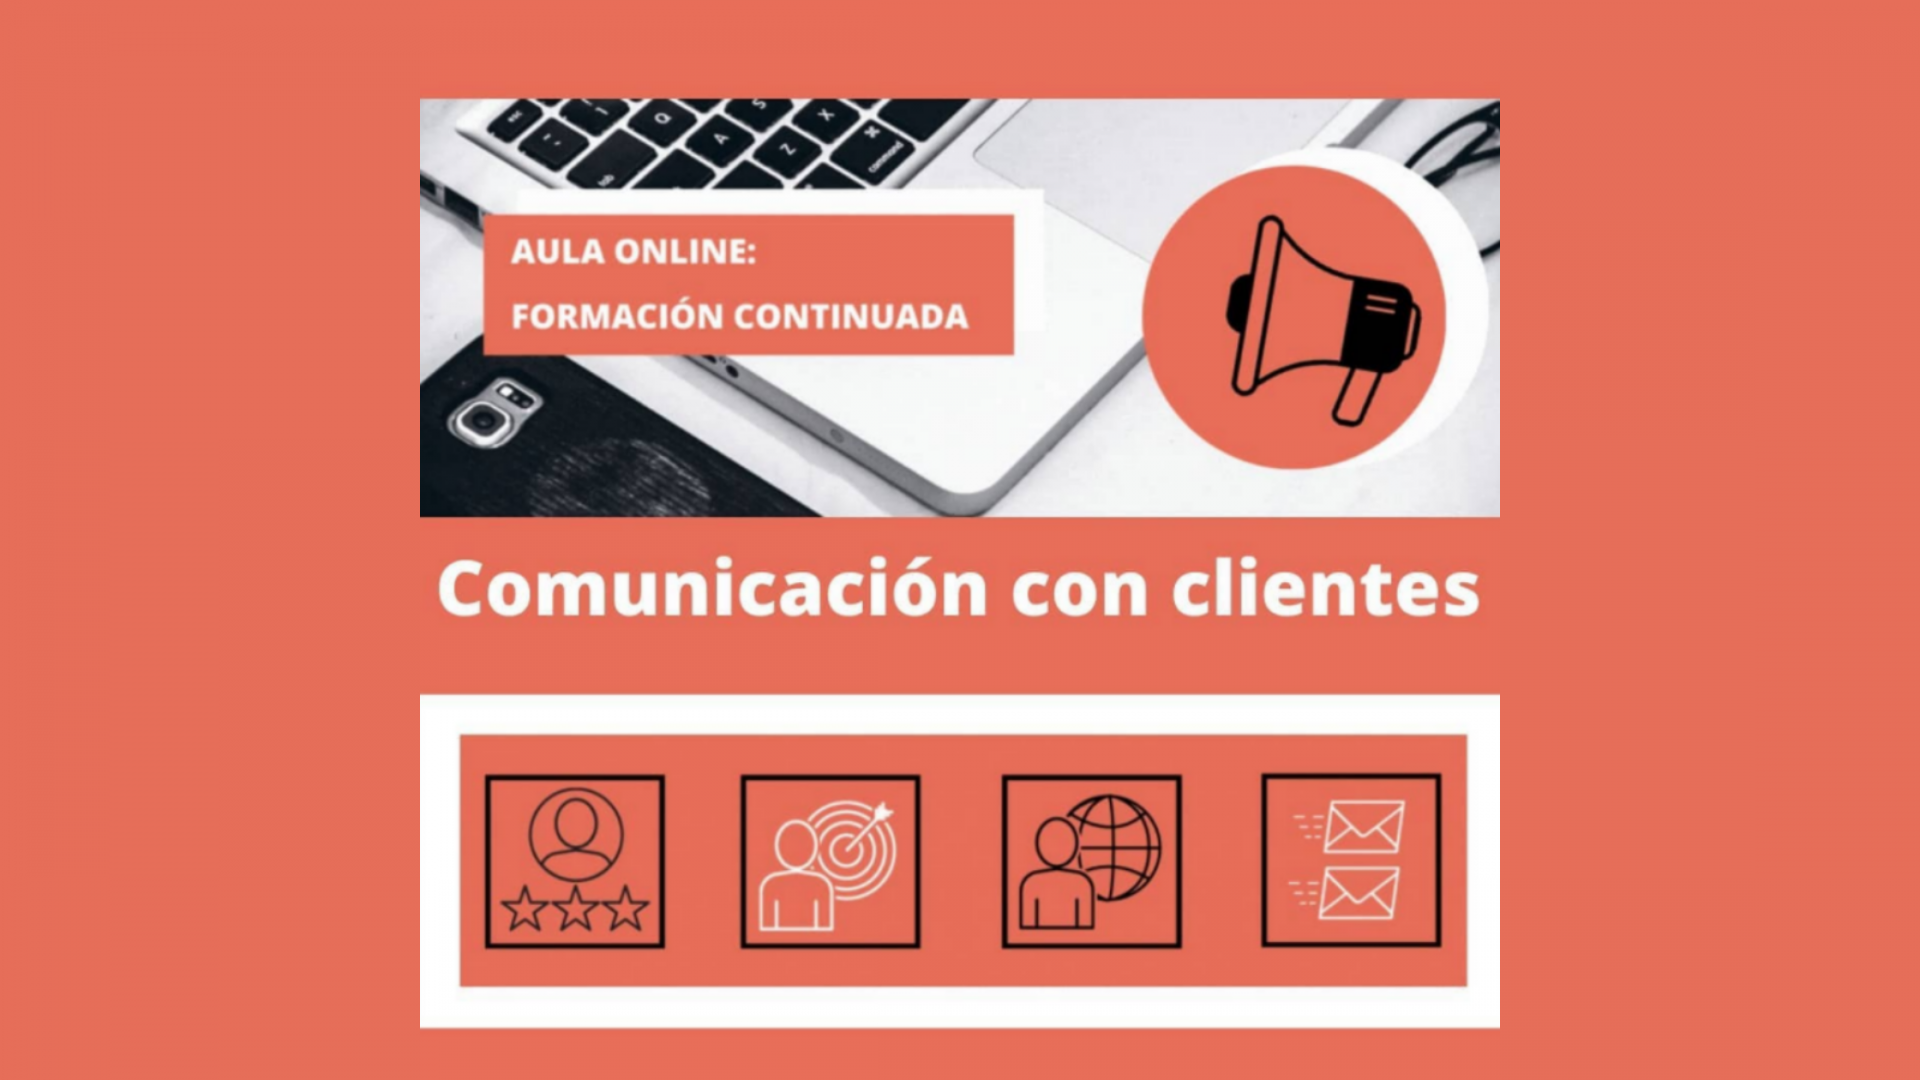 Aula online: Comunicación con clientes | Resumen